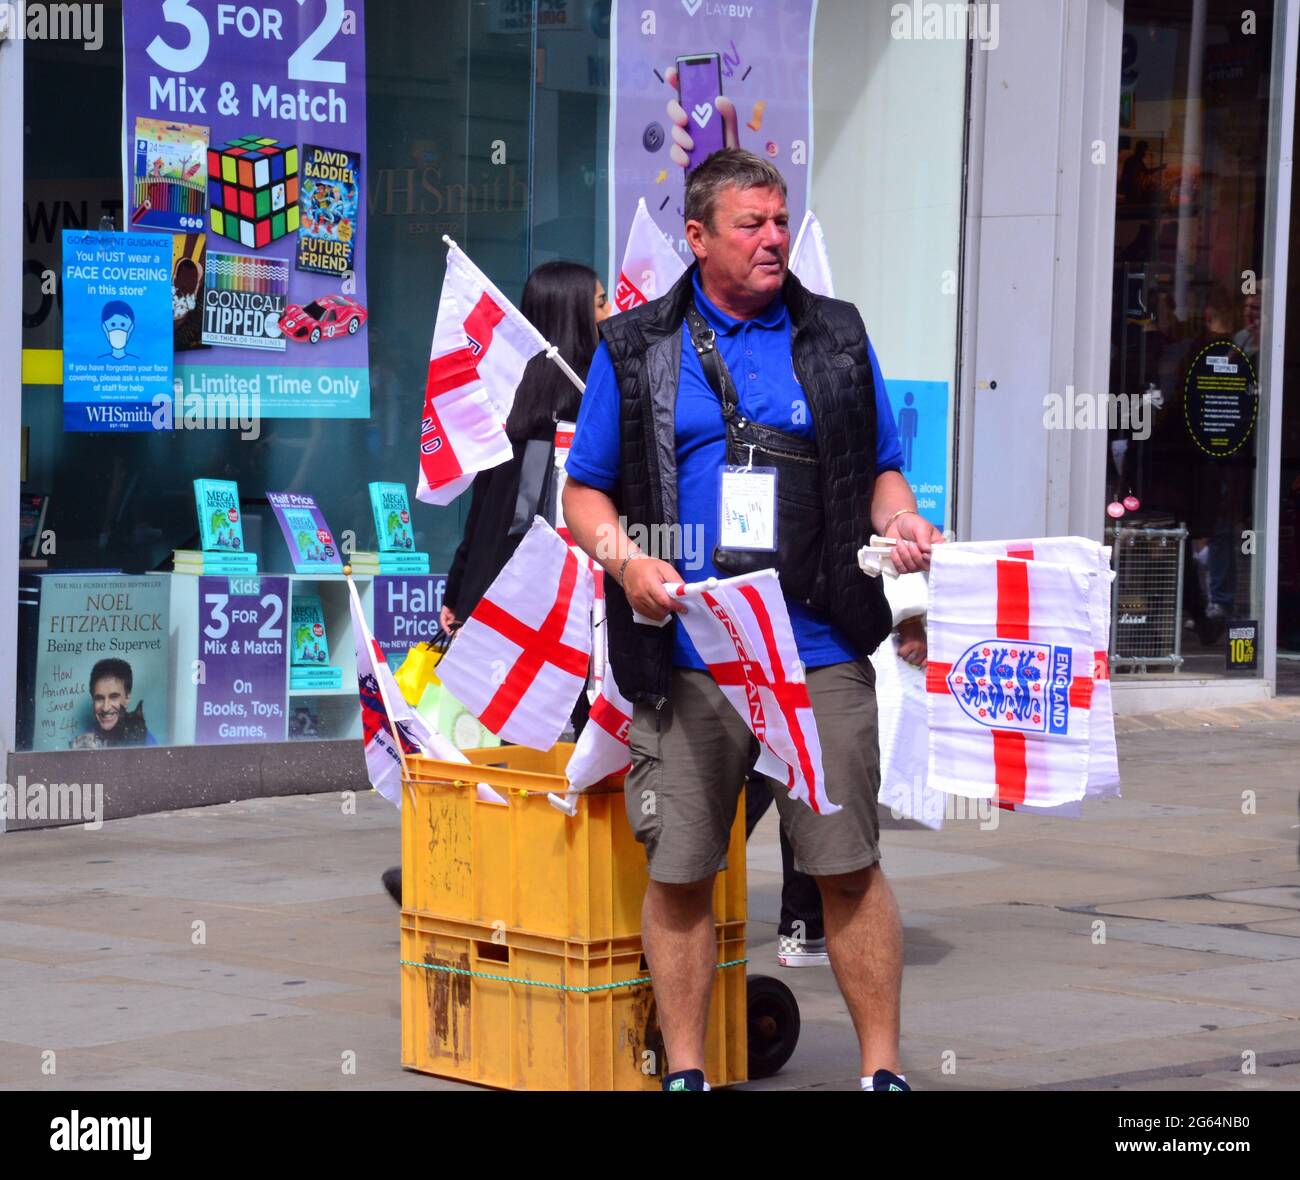 Uomo con carrello che vende bandiere d'Inghilterra nel centro di Manchester, Inghilterra, Regno Unito, 2 luglio 2021, Prima della partita di calcio Inghilterra / Ucraina il 3 luglio. Foto Stock